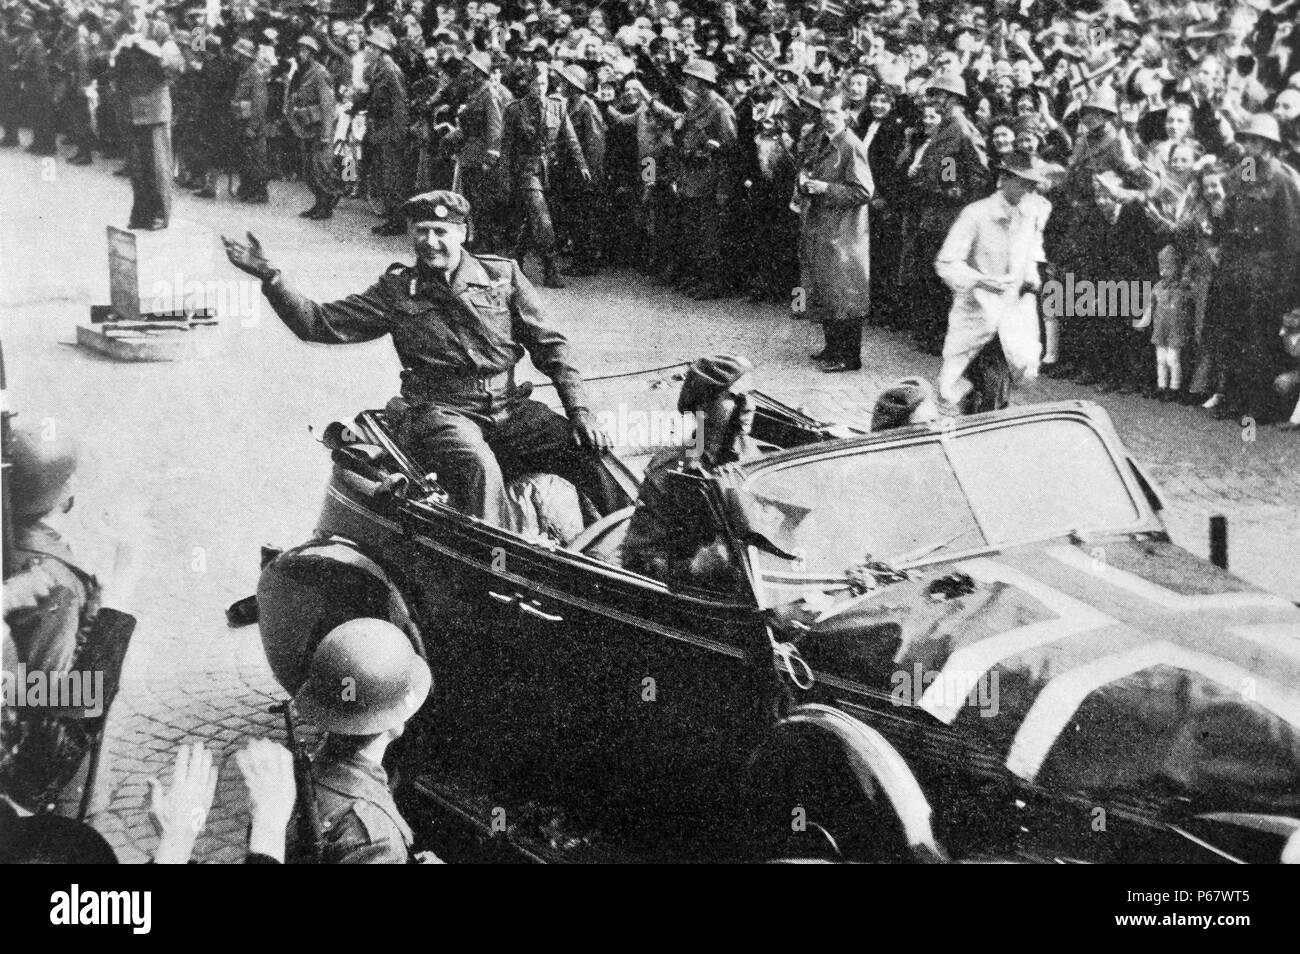 Prince Olav de Norvège revient à la maison après la libération de la Norvège après la Seconde Guerre mondiale Banque D'Images